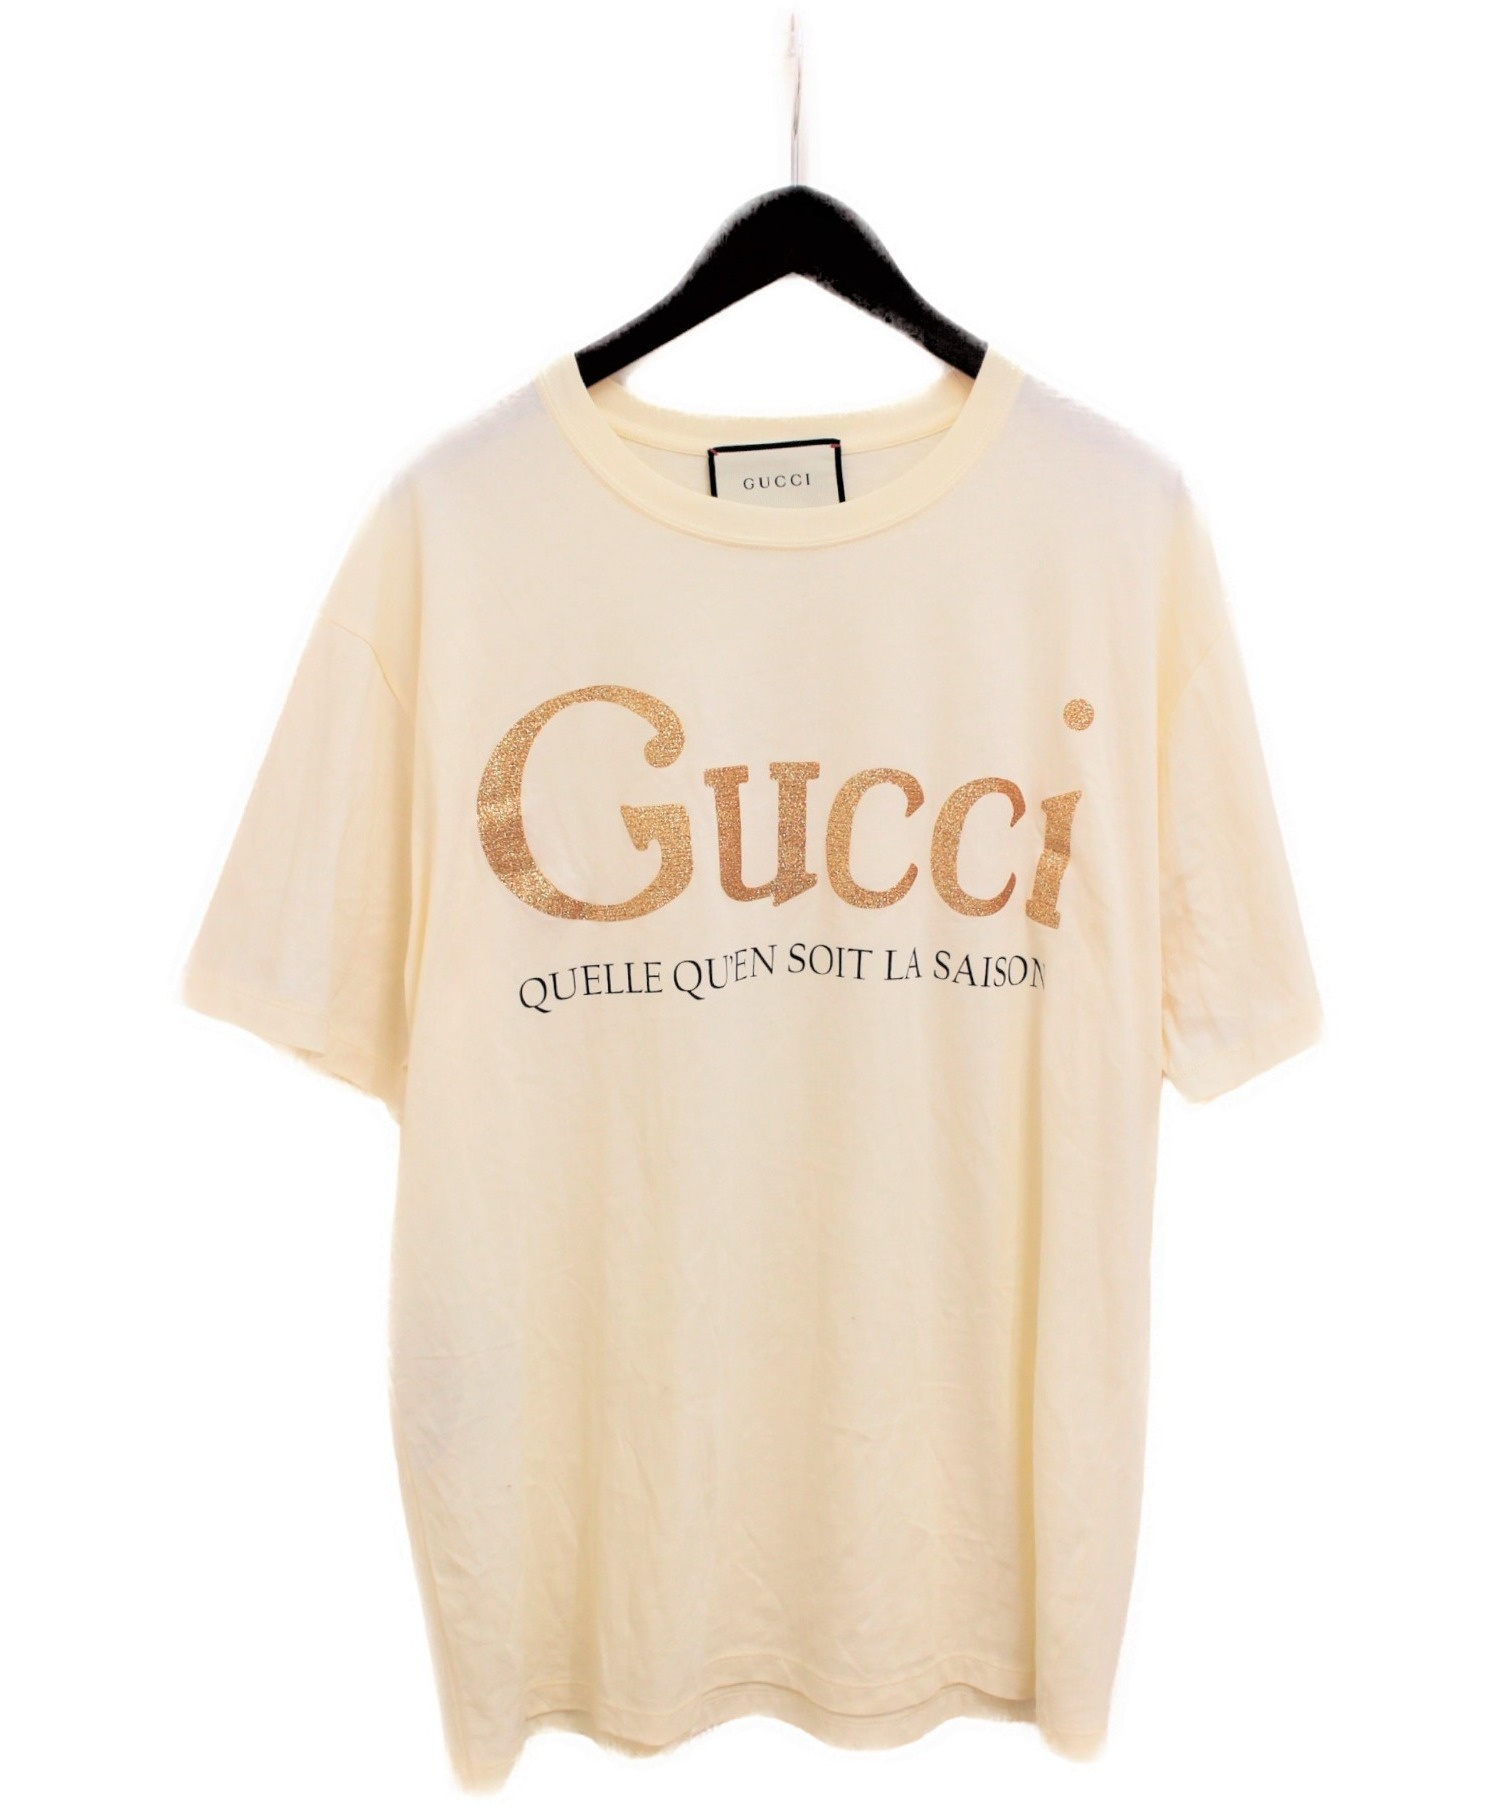 14700円直販格安 新しい ☆正規品 GUCCI グッチ Tシャツ Mサイズ